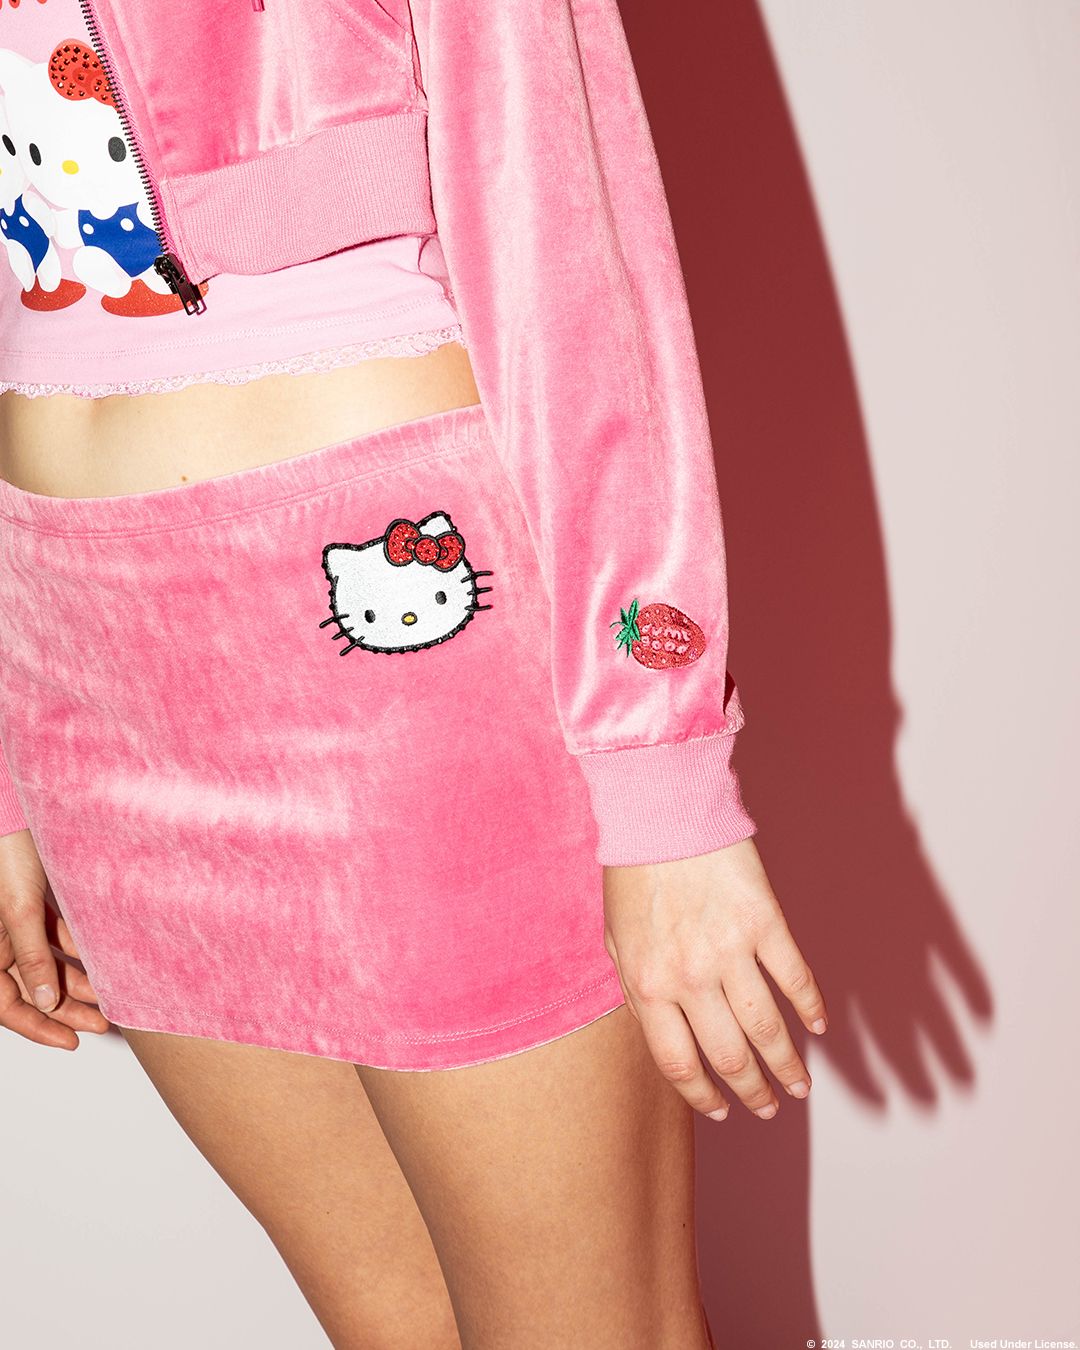 Hello Kitty от Sanrio представляет новую эксклюзивную коллекцию одежды Dumbgood